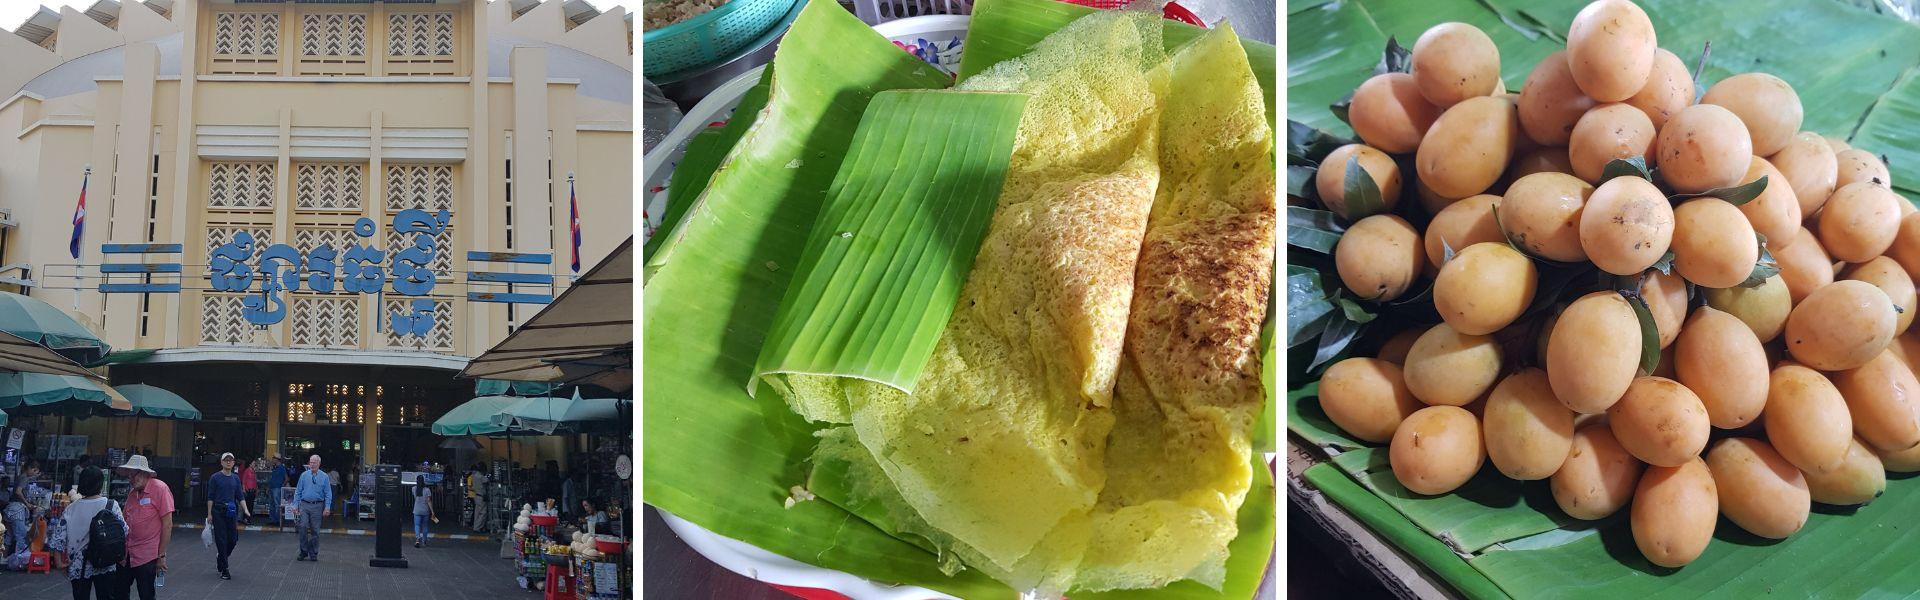 Dégustation de desserts Khmers au marché local